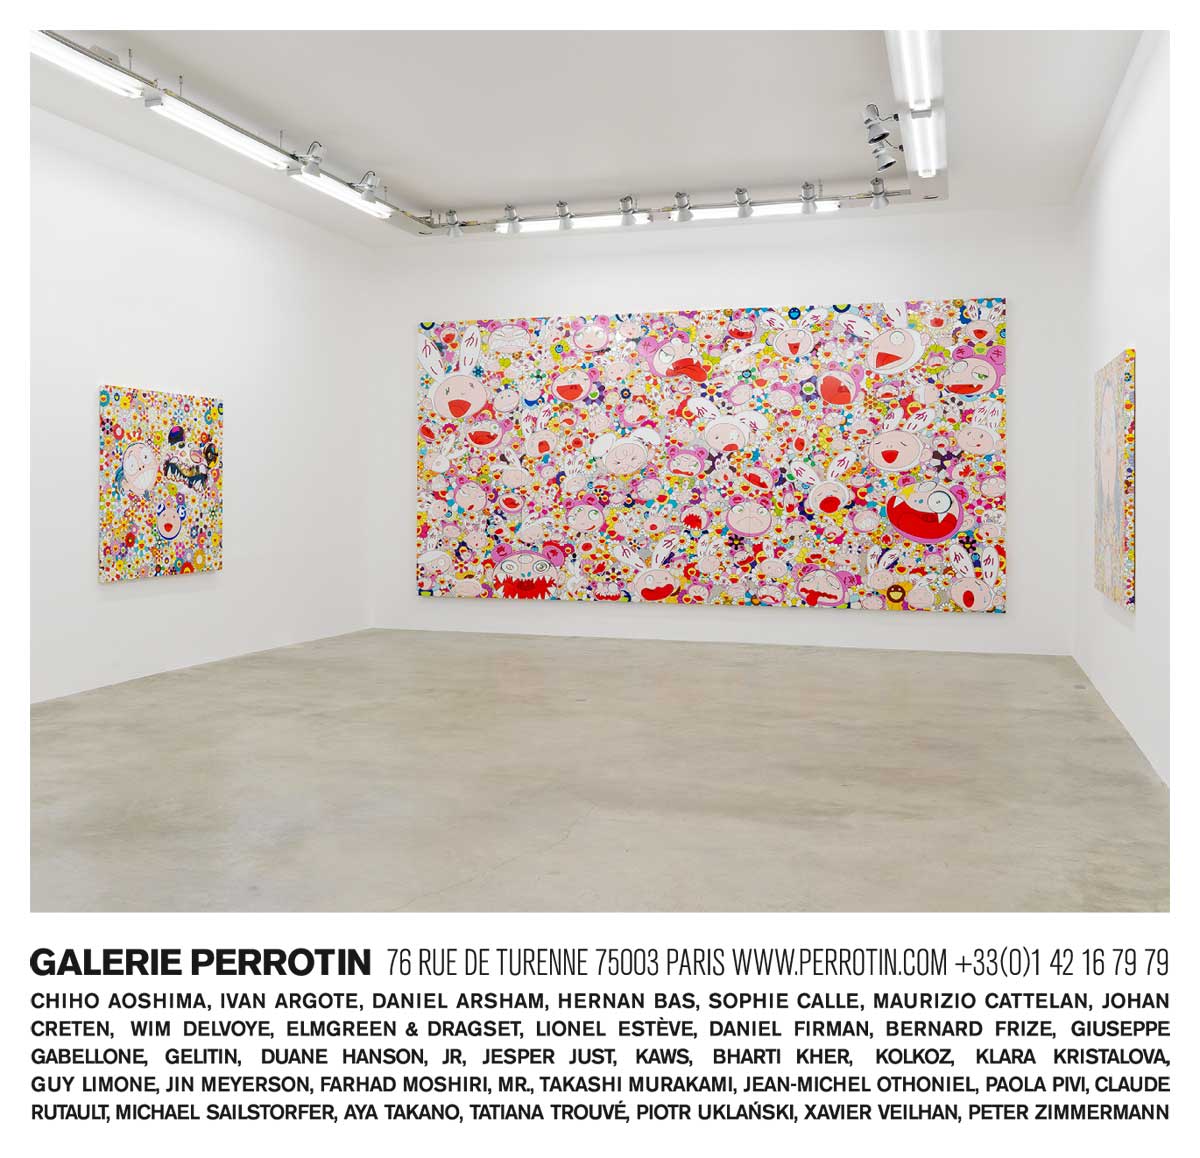 Galerie Perrotin (Paris/Tokyo/Seoul/NewYork/Shanghai/Hong Kong) – Perrotin advertising